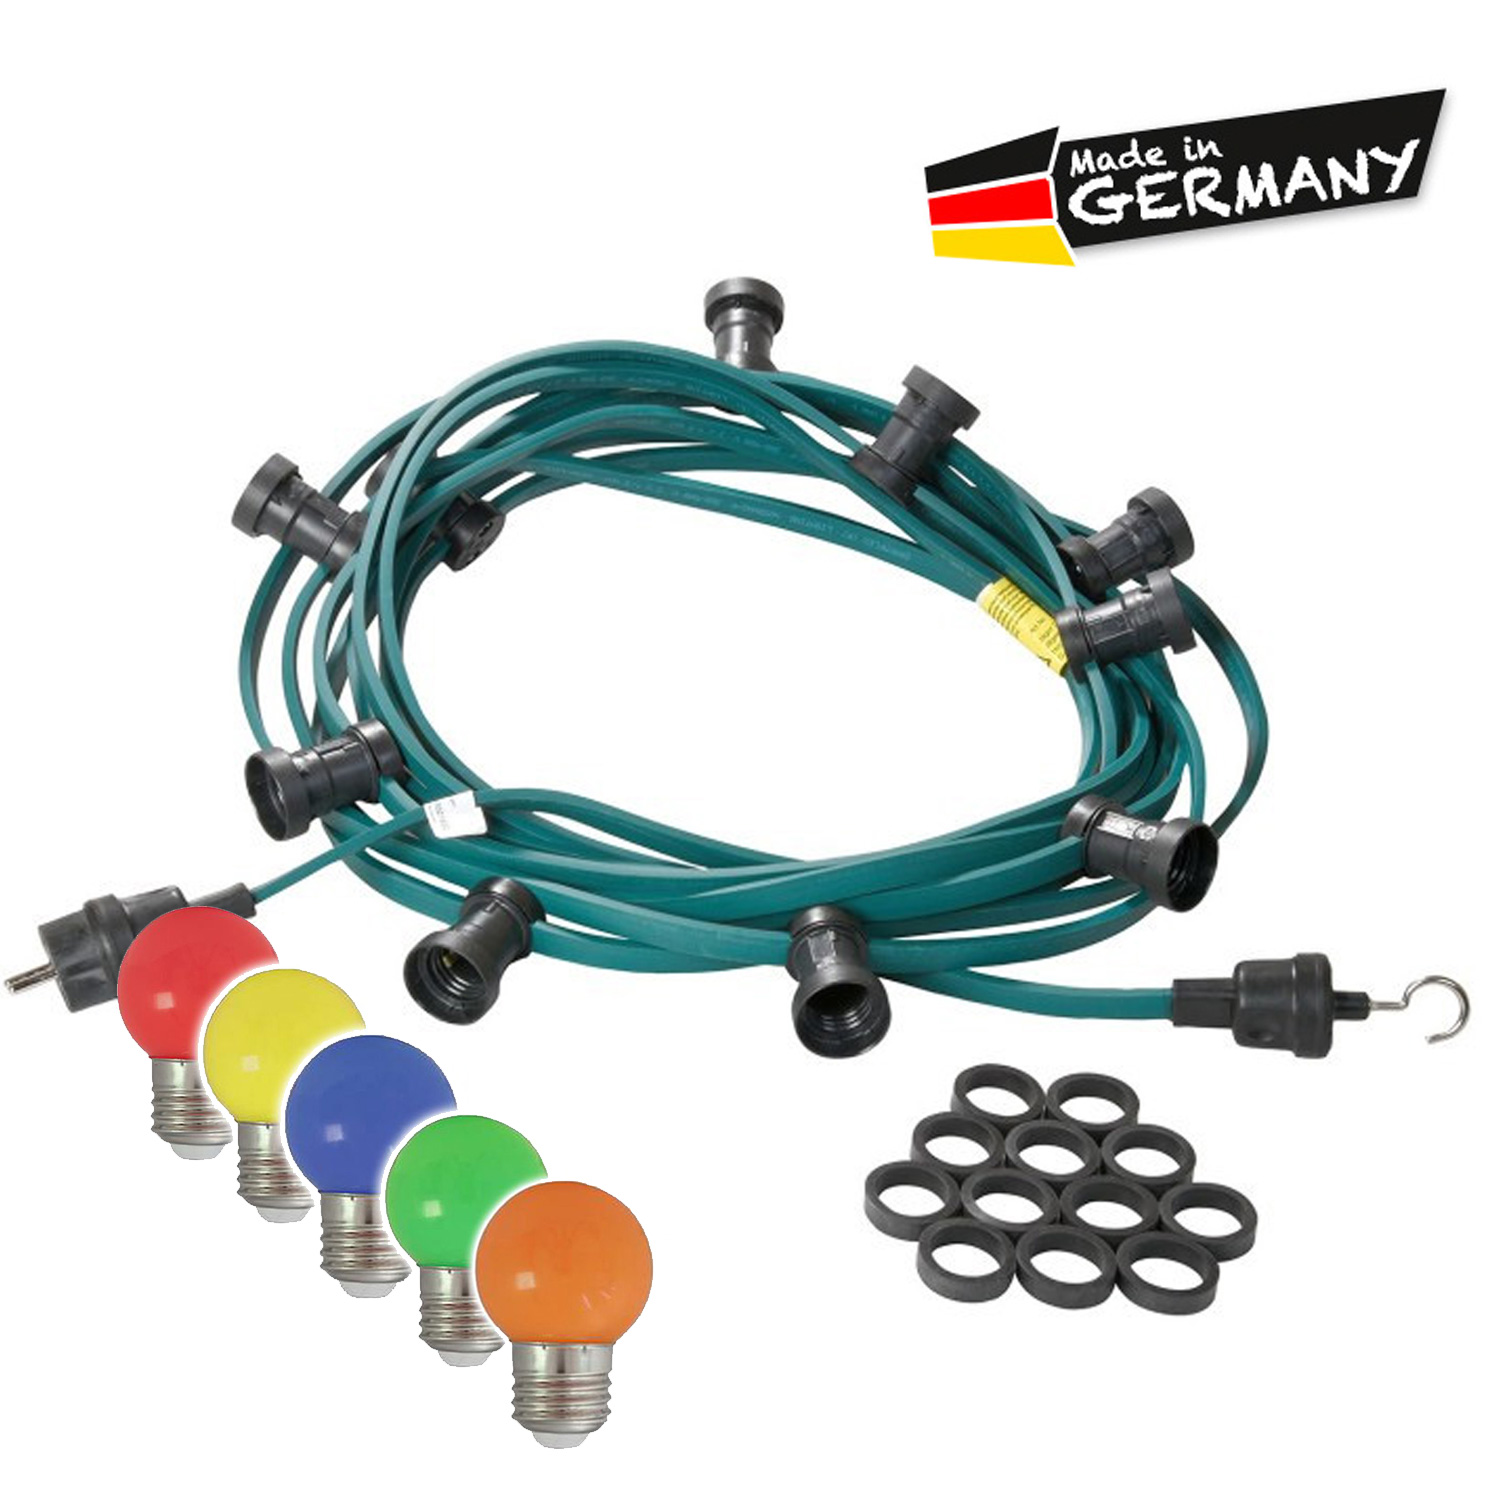 Illu-/Partylichterkette grün 20m - Außenlichterkette - Made in Germany - 20 x bunte LED Kugellampen